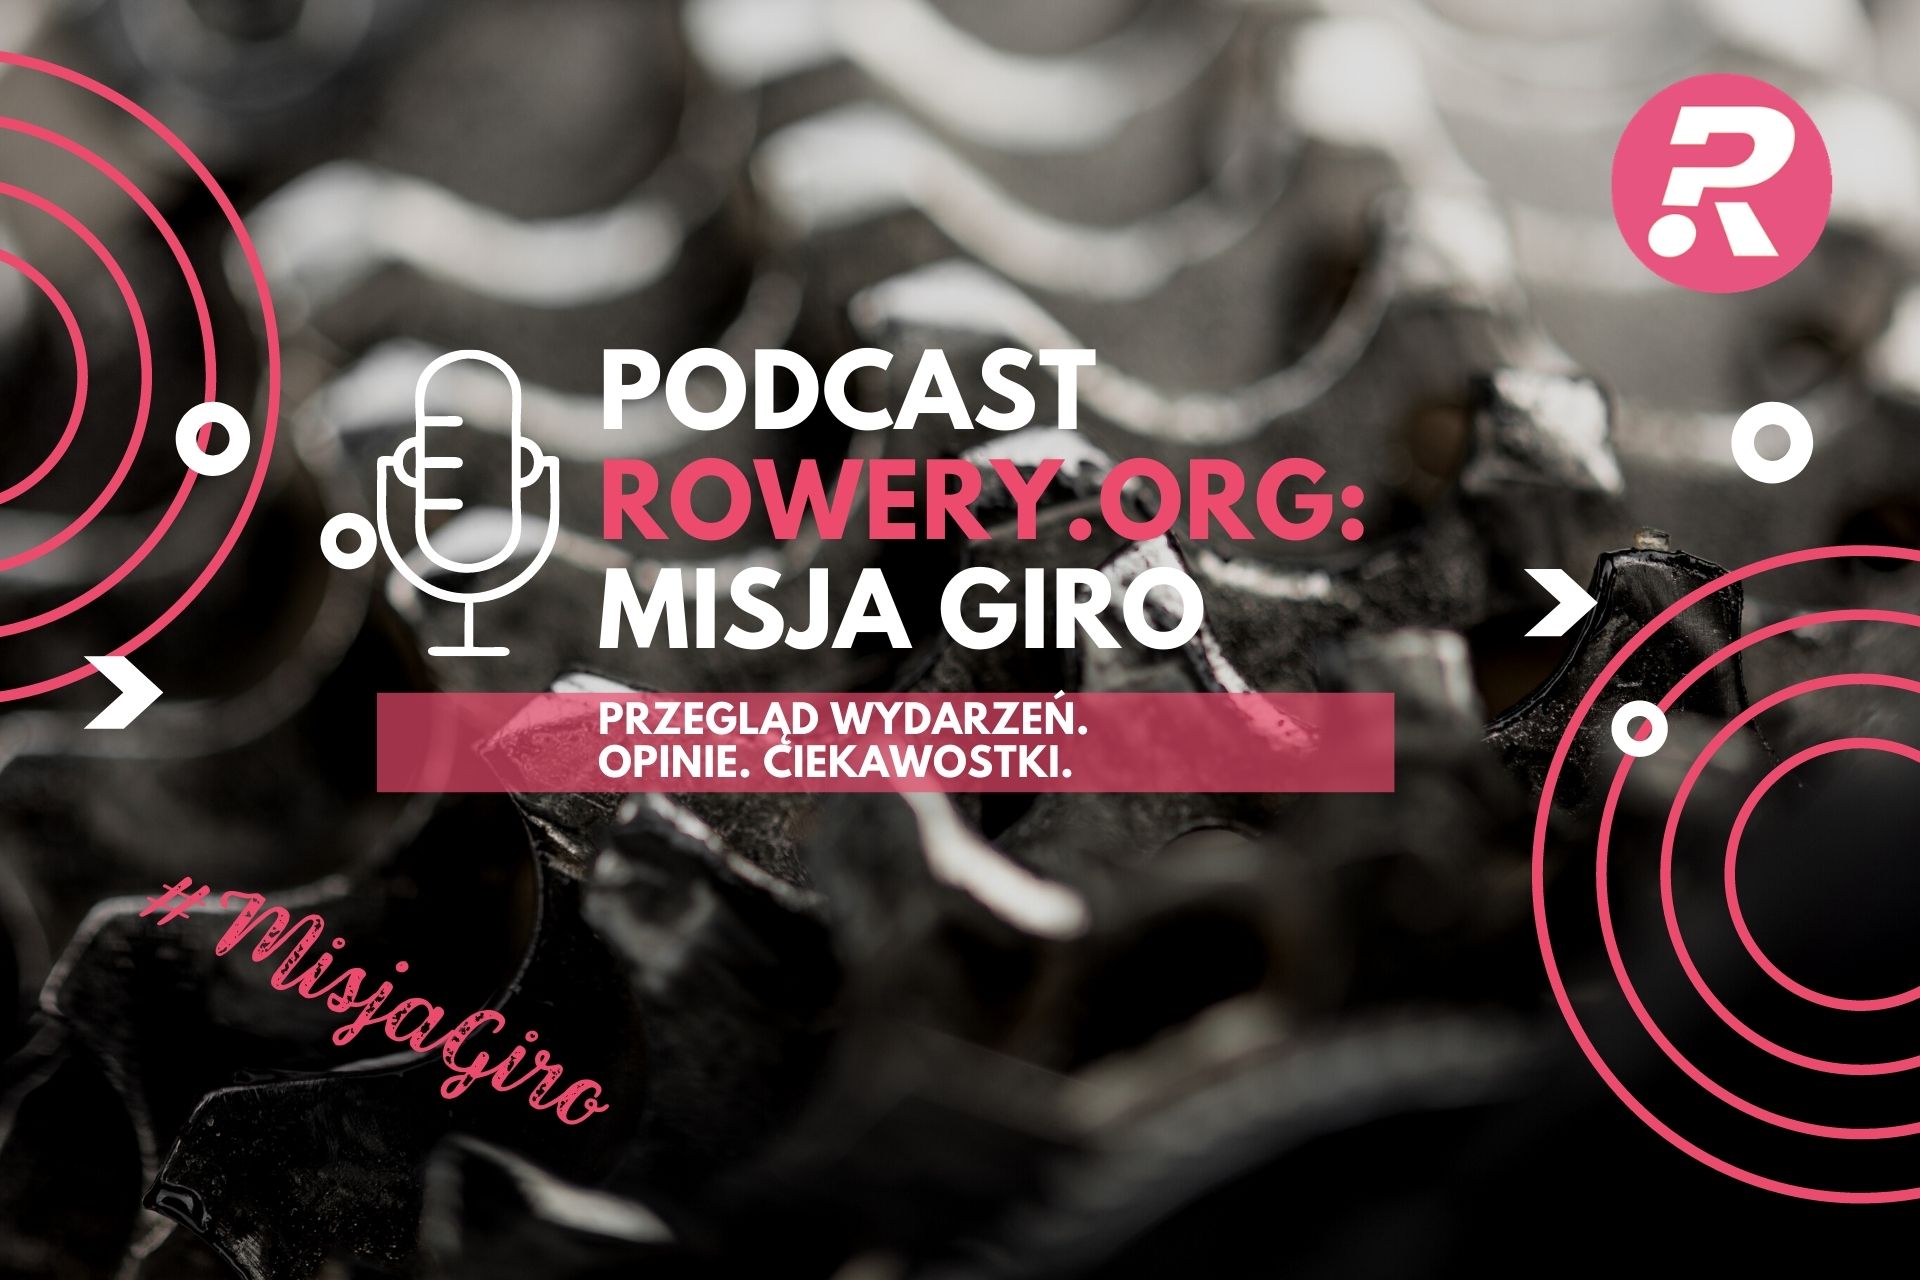 Misja Giro: rusza podcast Rowery.org